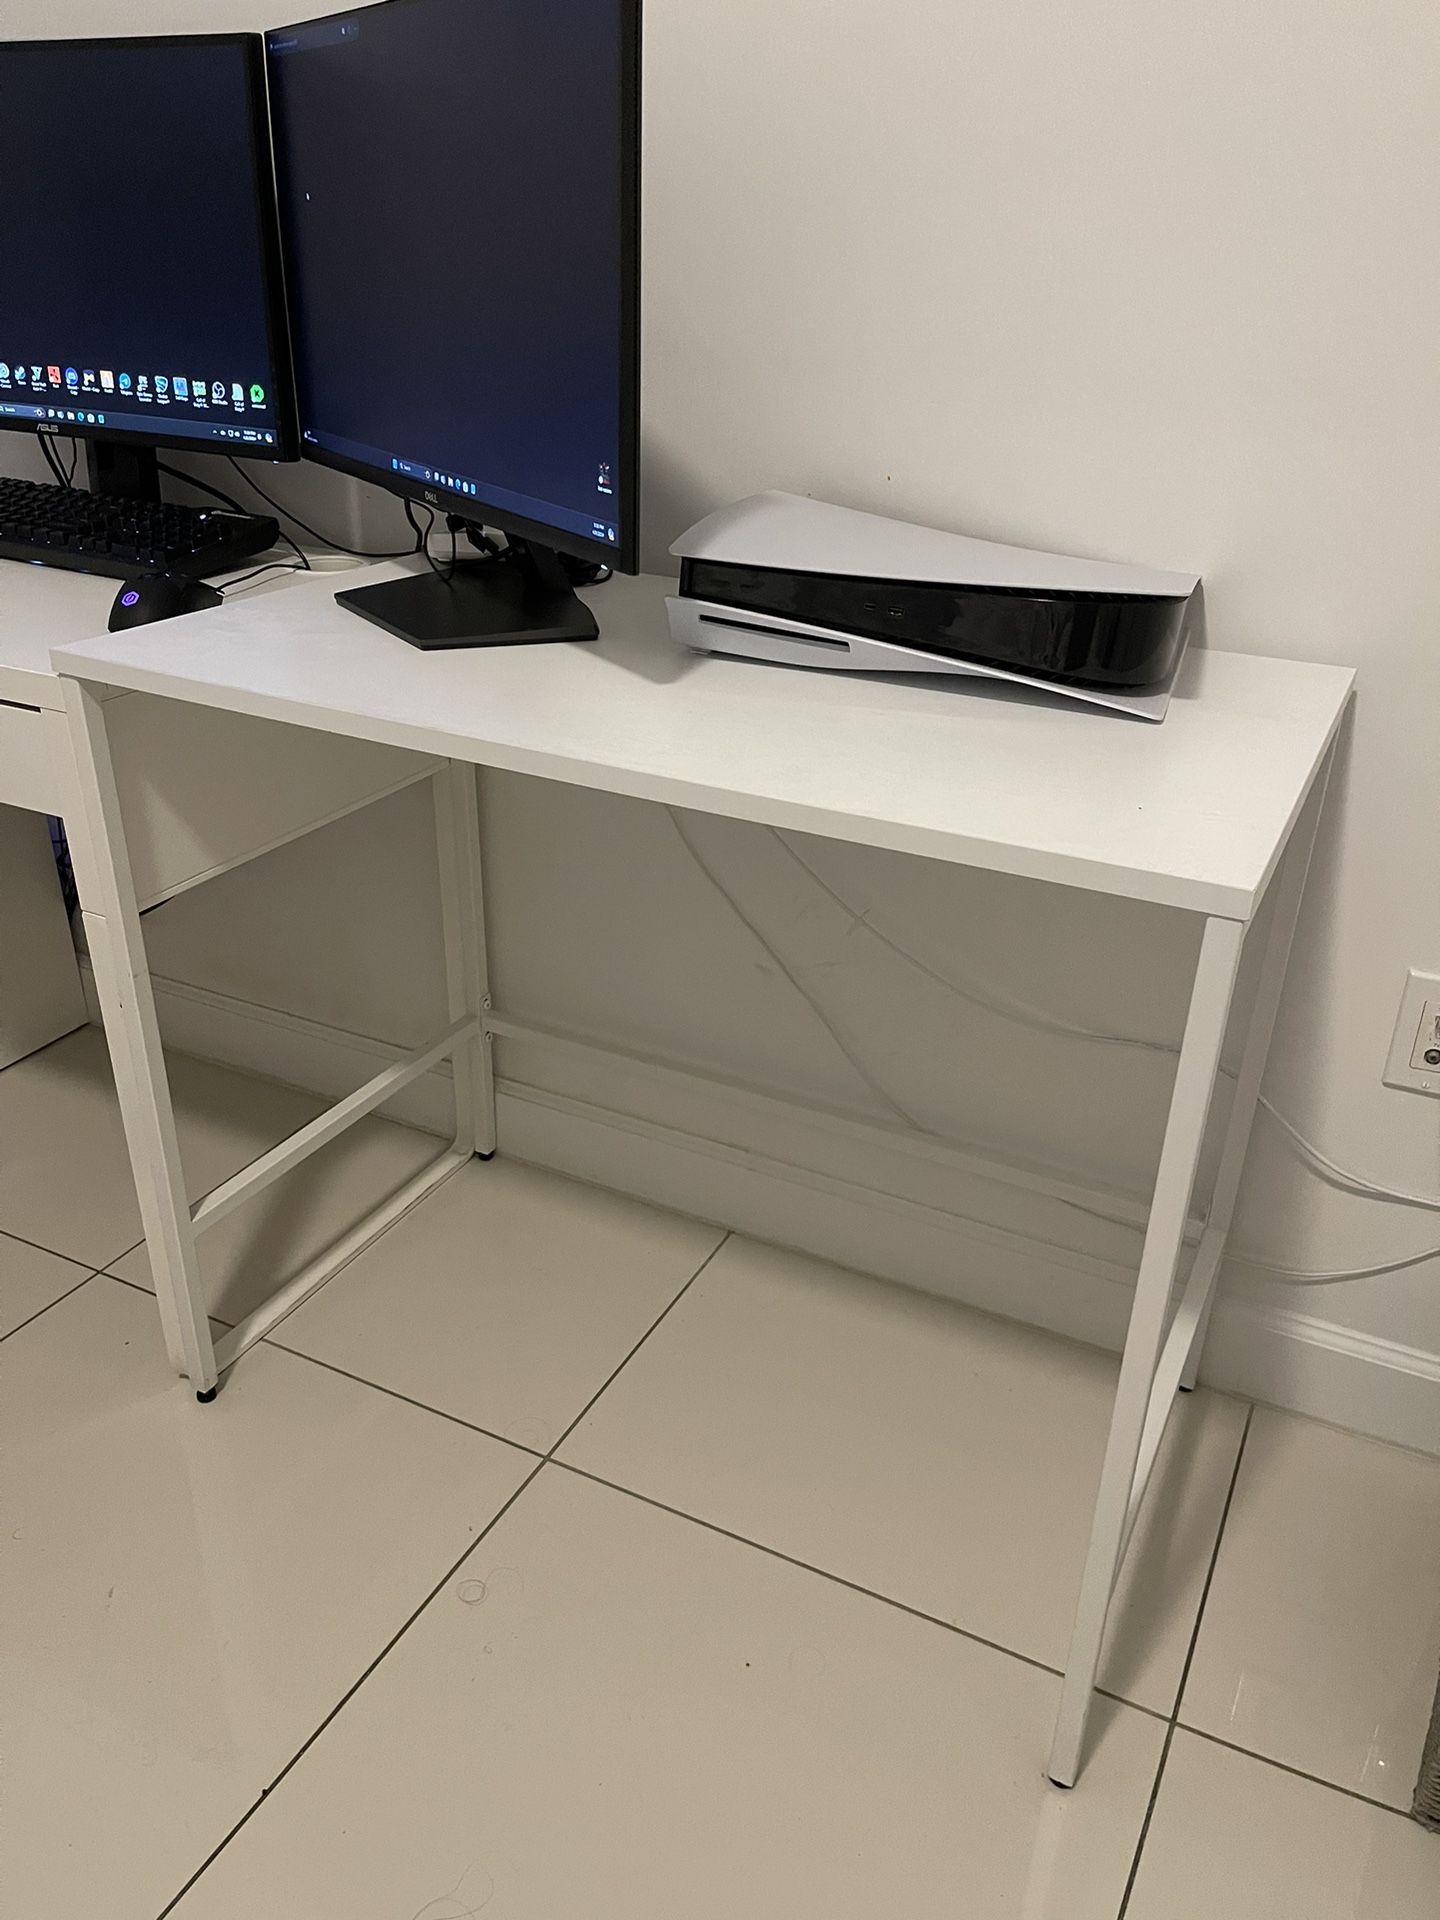 Target Brand New White Desk Table